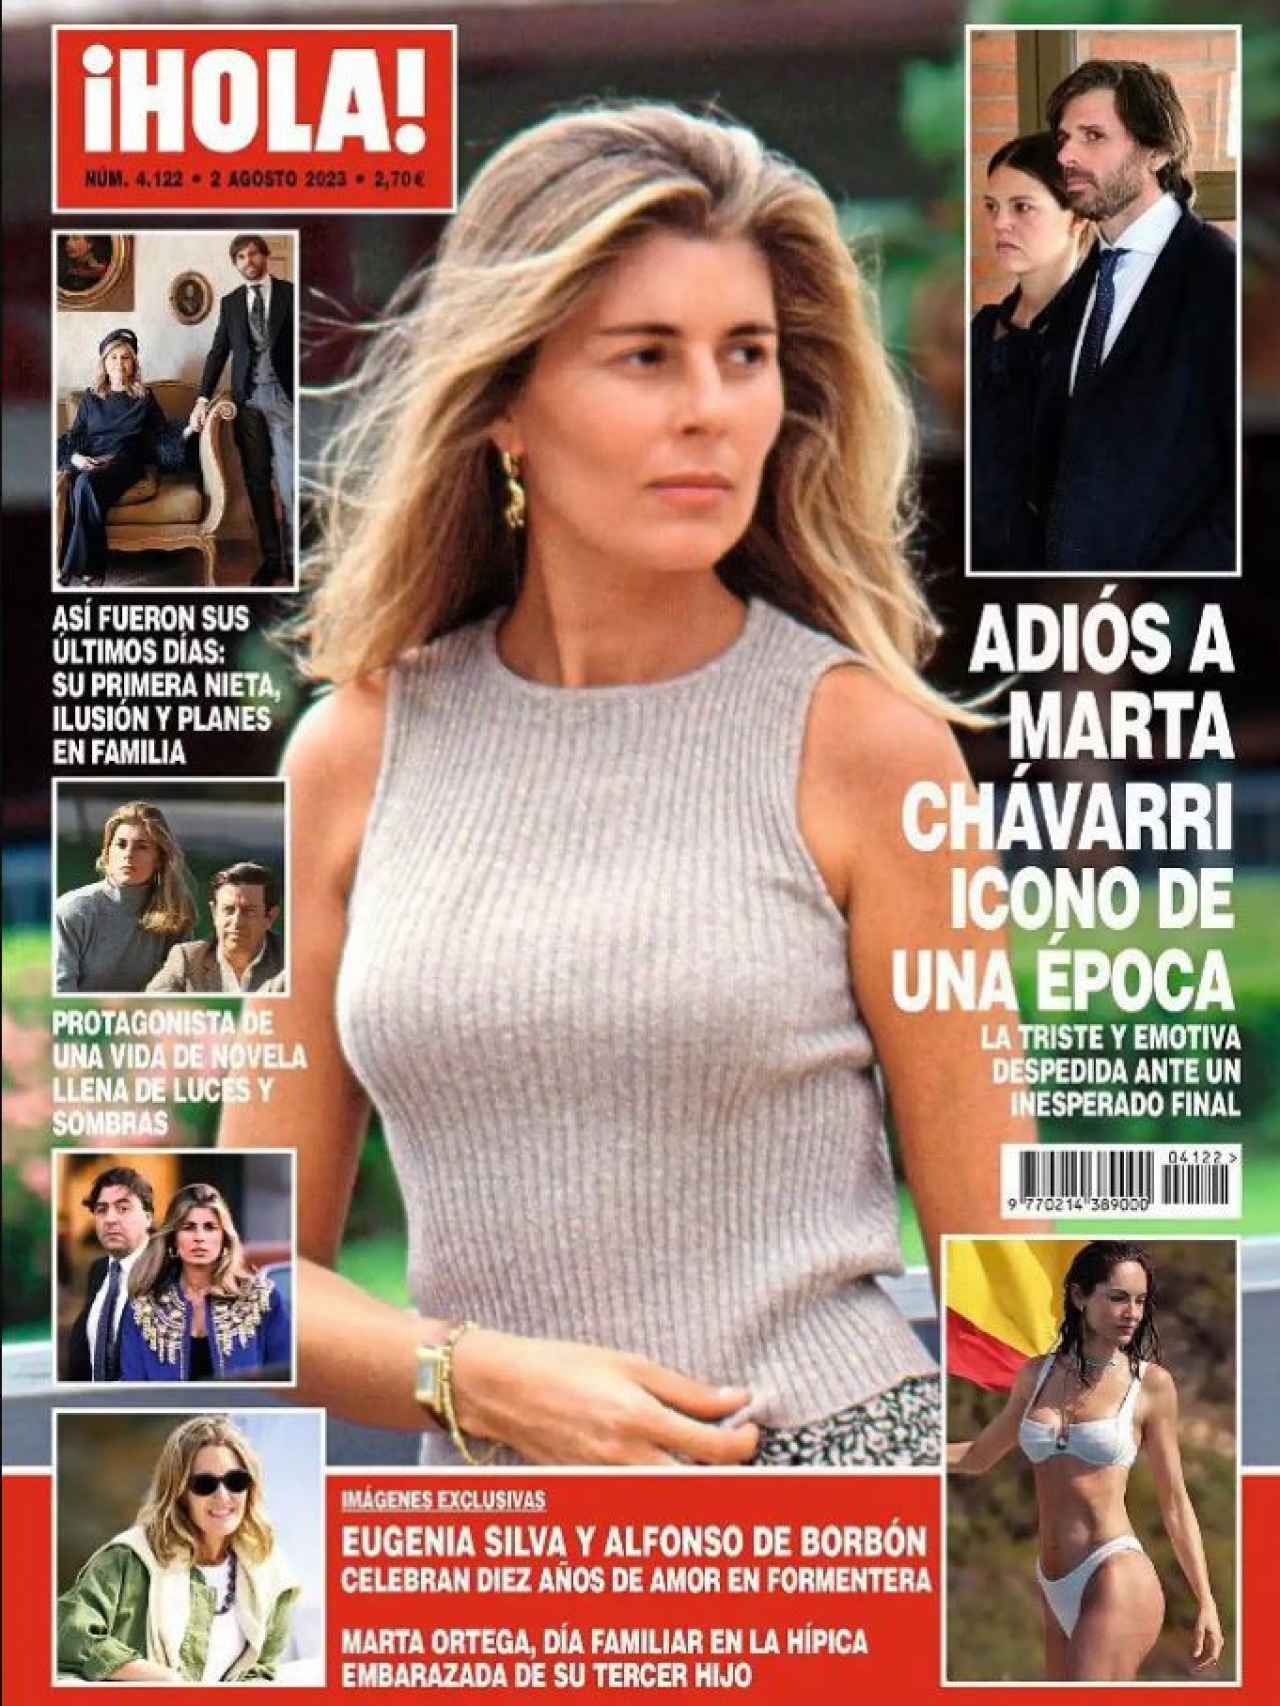 La portada de la revista '¡HOLA!' donde se informa de los últimos días de Marta.